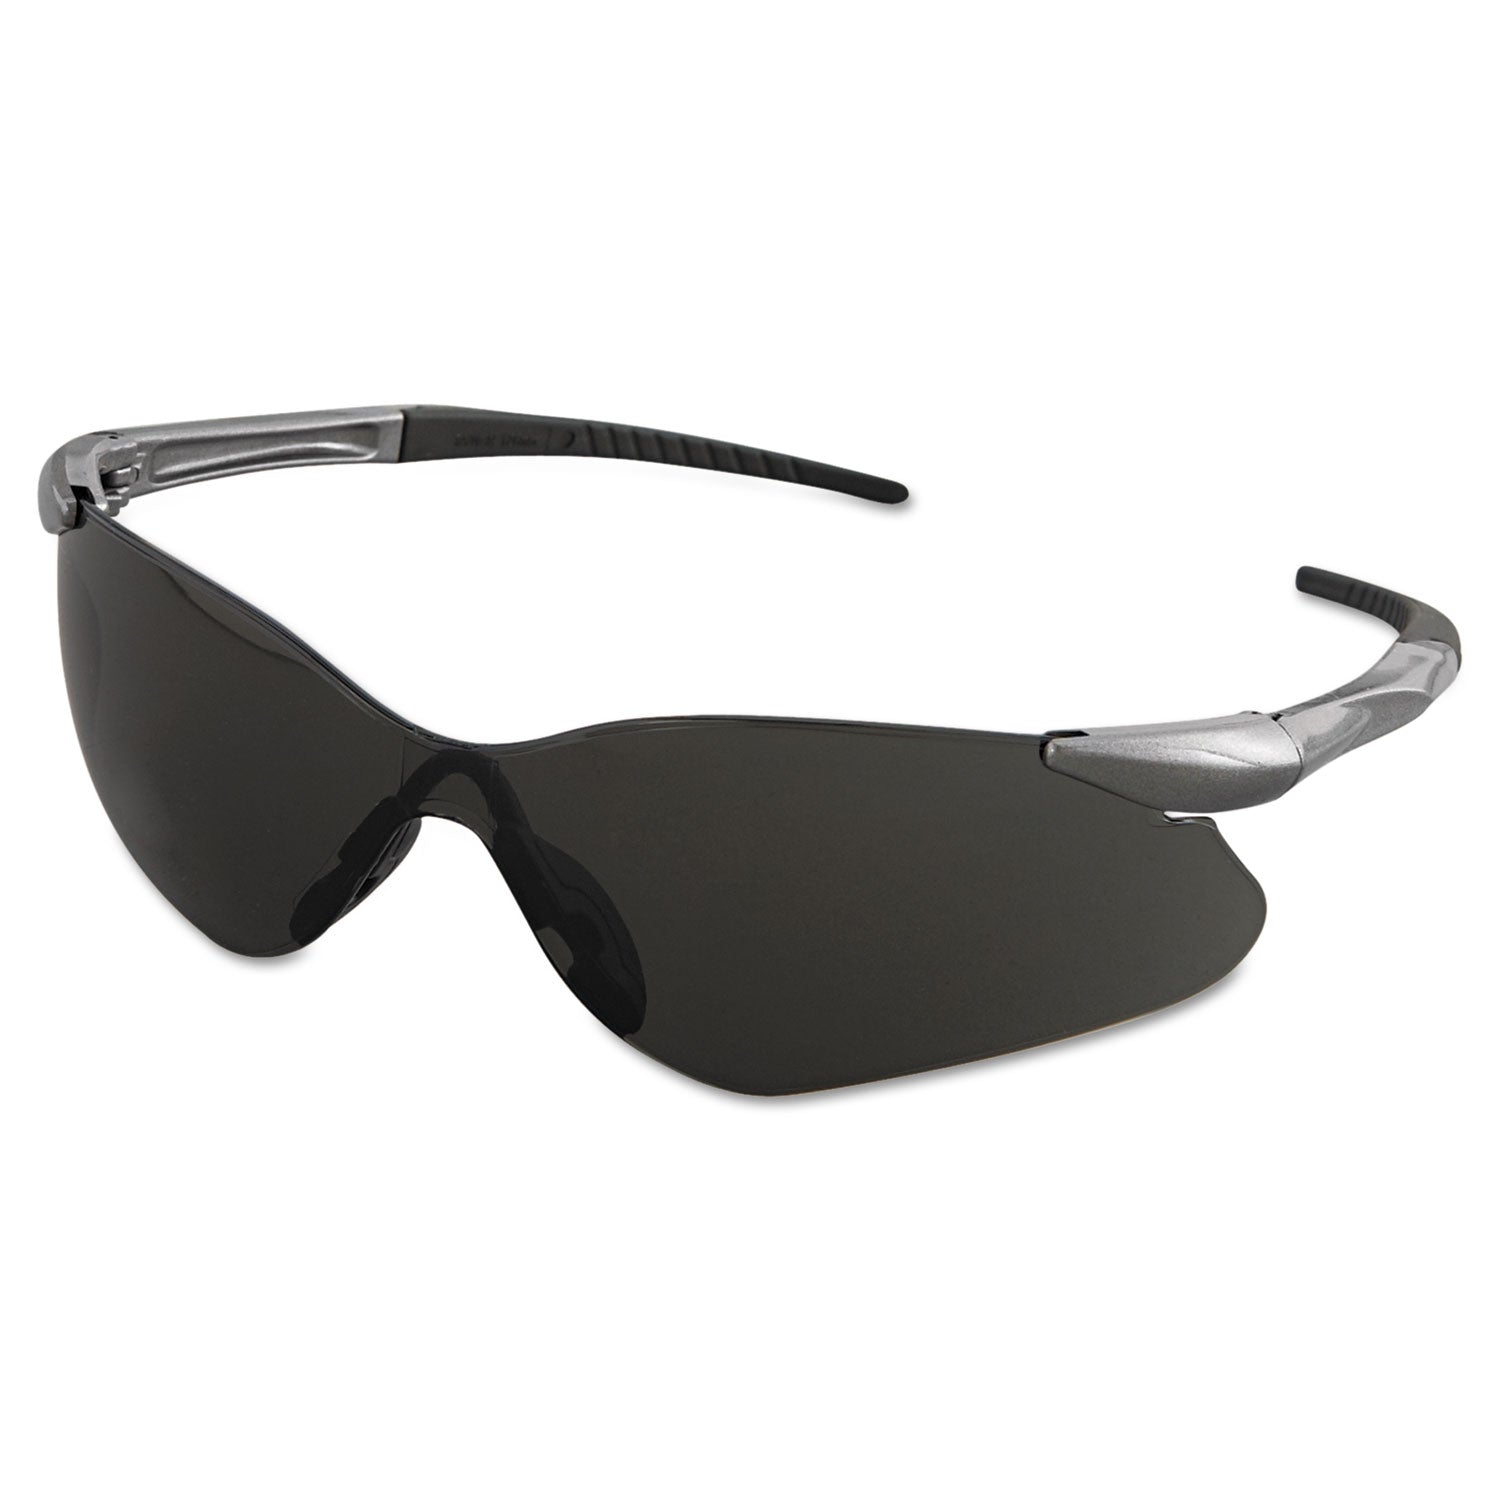 nemesis-vl-safety-glasses-gunmetal-frame-smoke-uncoated-lens_kcc25704 - 1